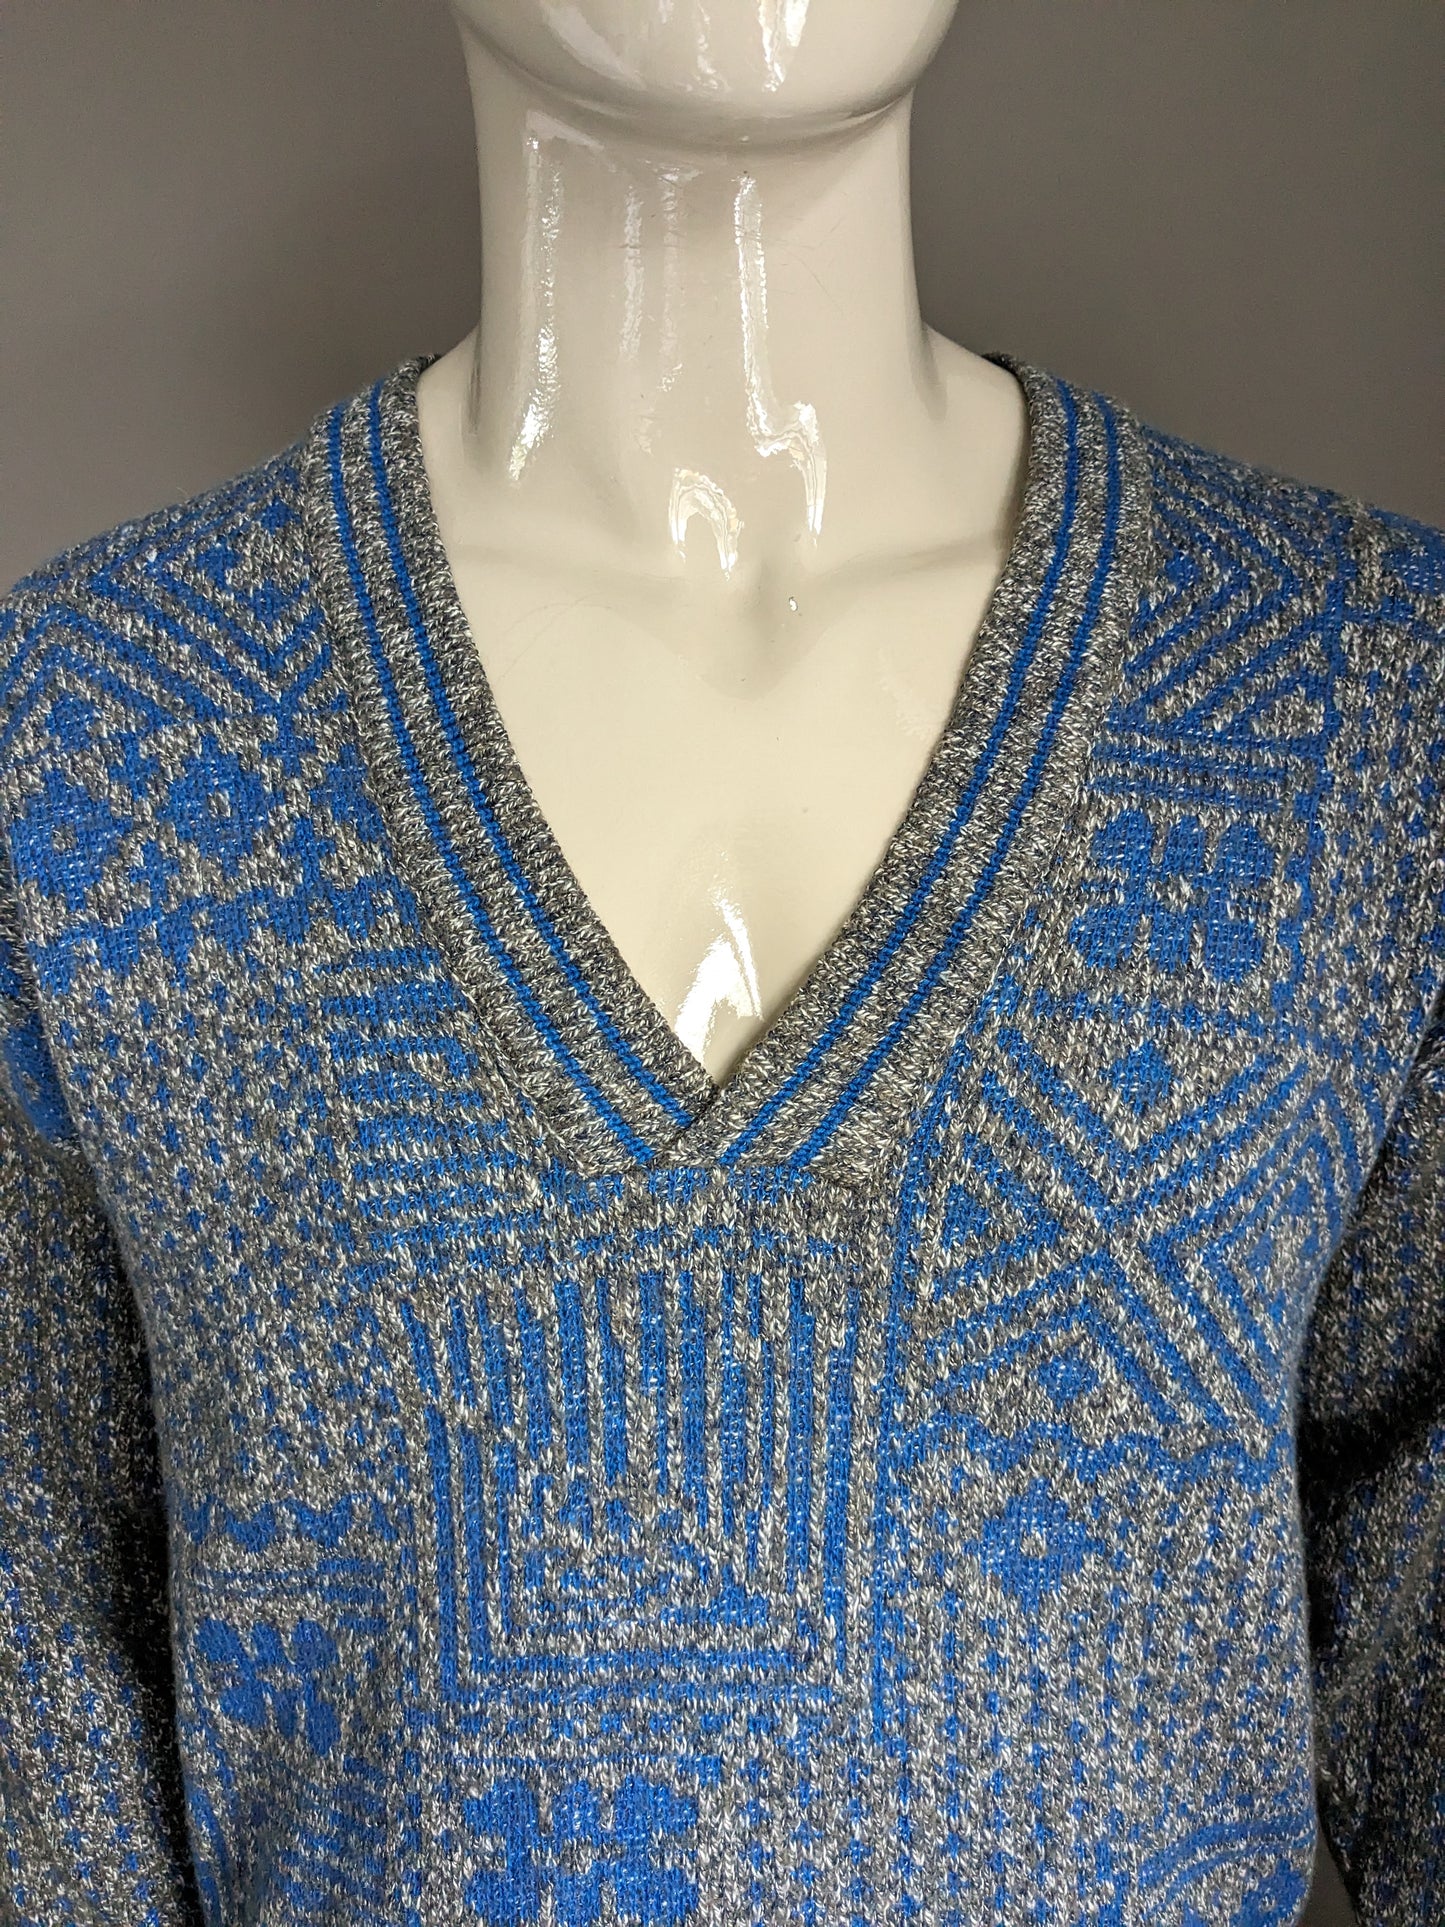 Suéter Vintage Massimo Dati con cuello en V. Color azul gris de color. Tamaño L. (35% de lana)